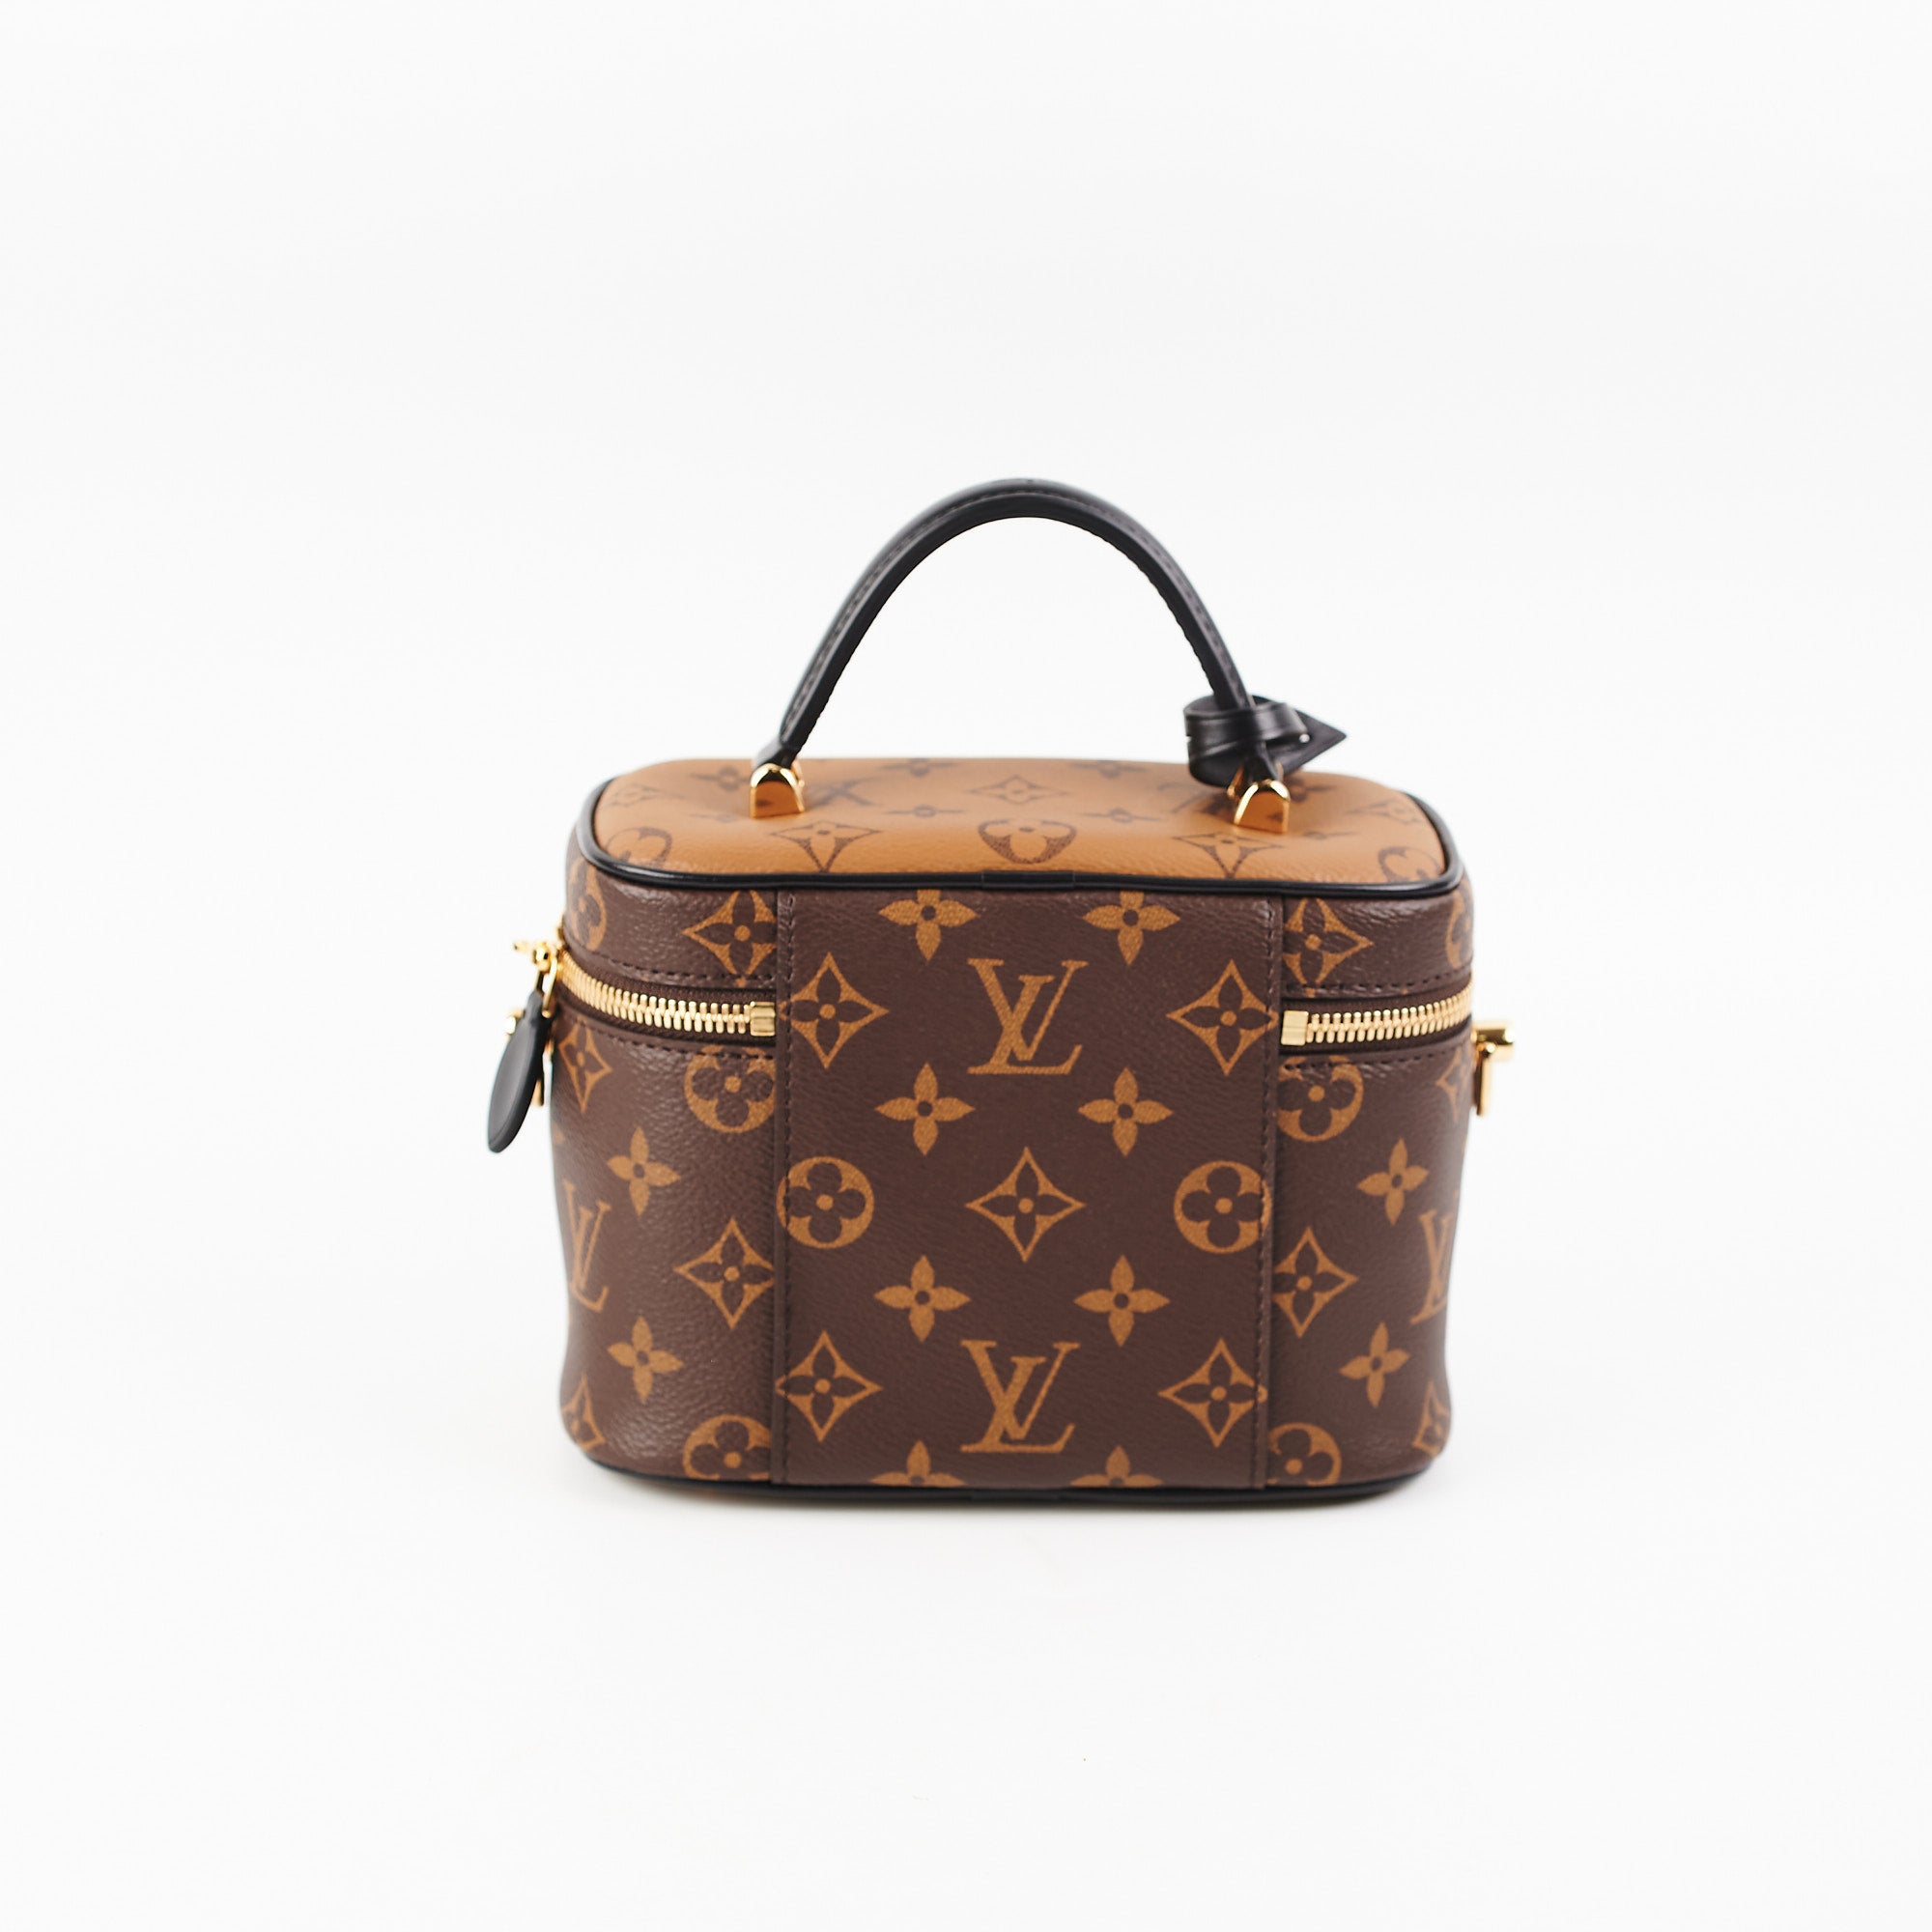 Louis Vuitton, Bags, Louis Vuitton Vanity Pm Reverse